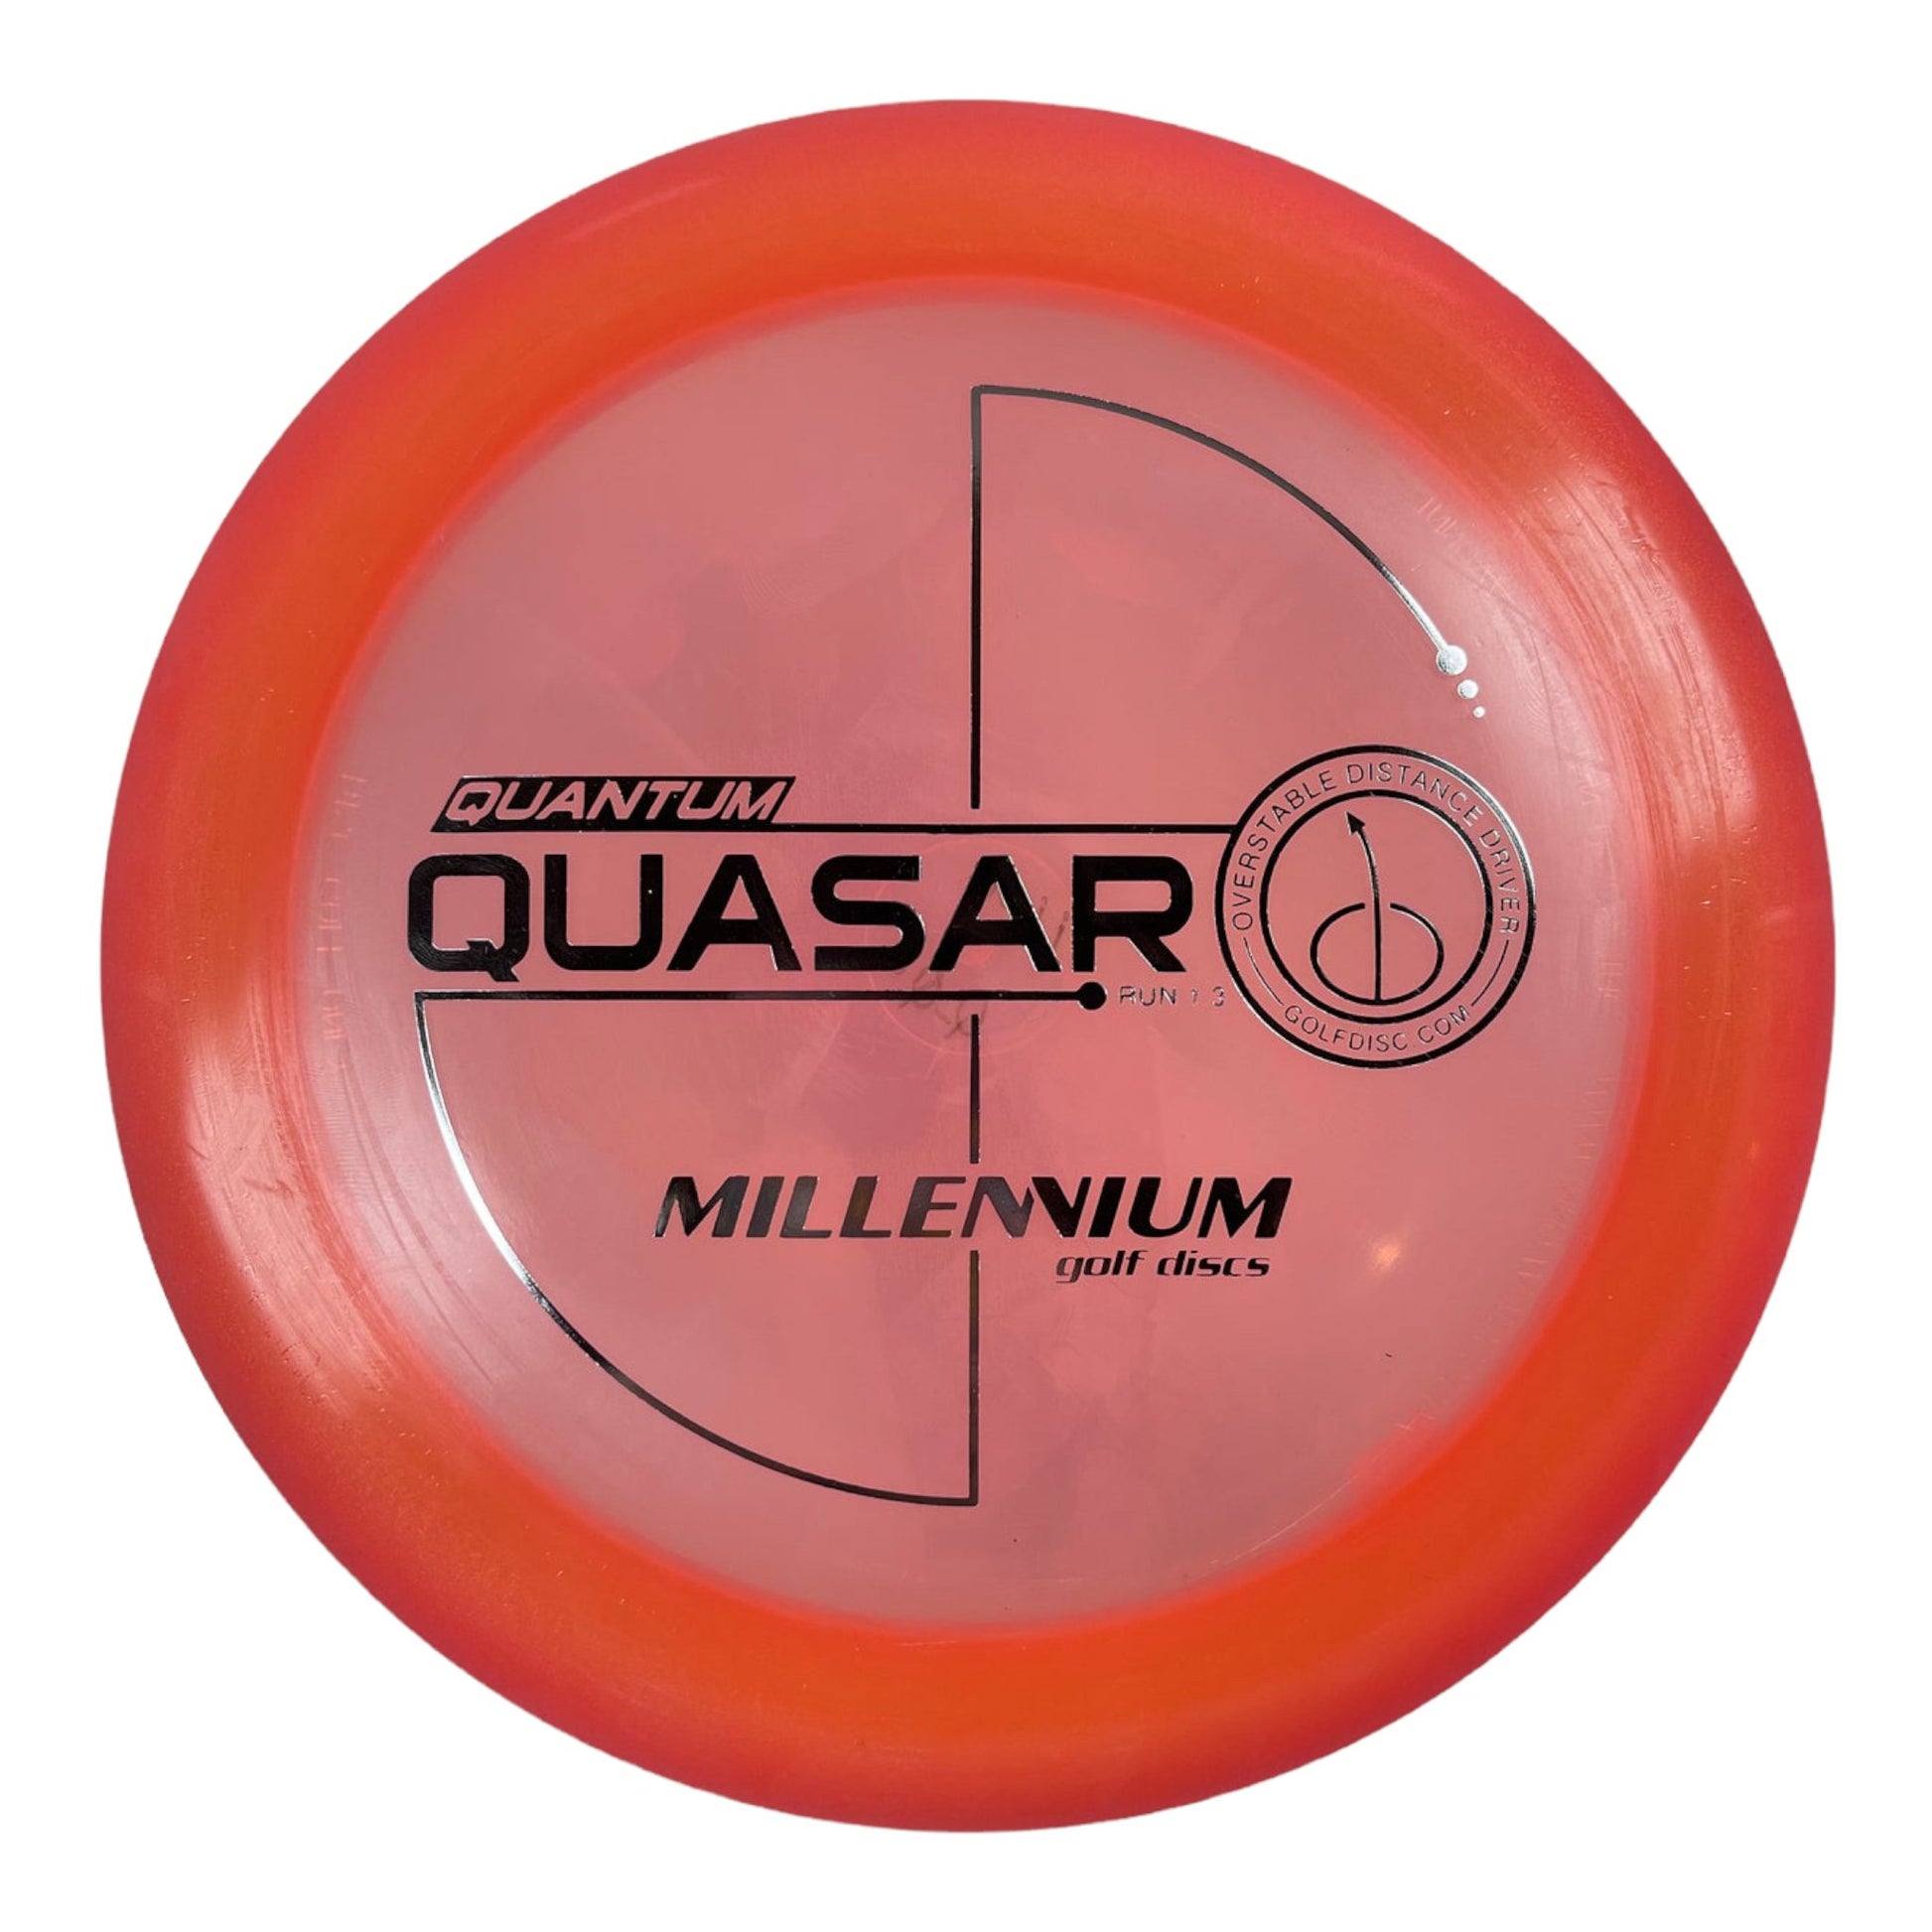 Millennium Golf Discs Quasar | Quantum | Peach/SIlver